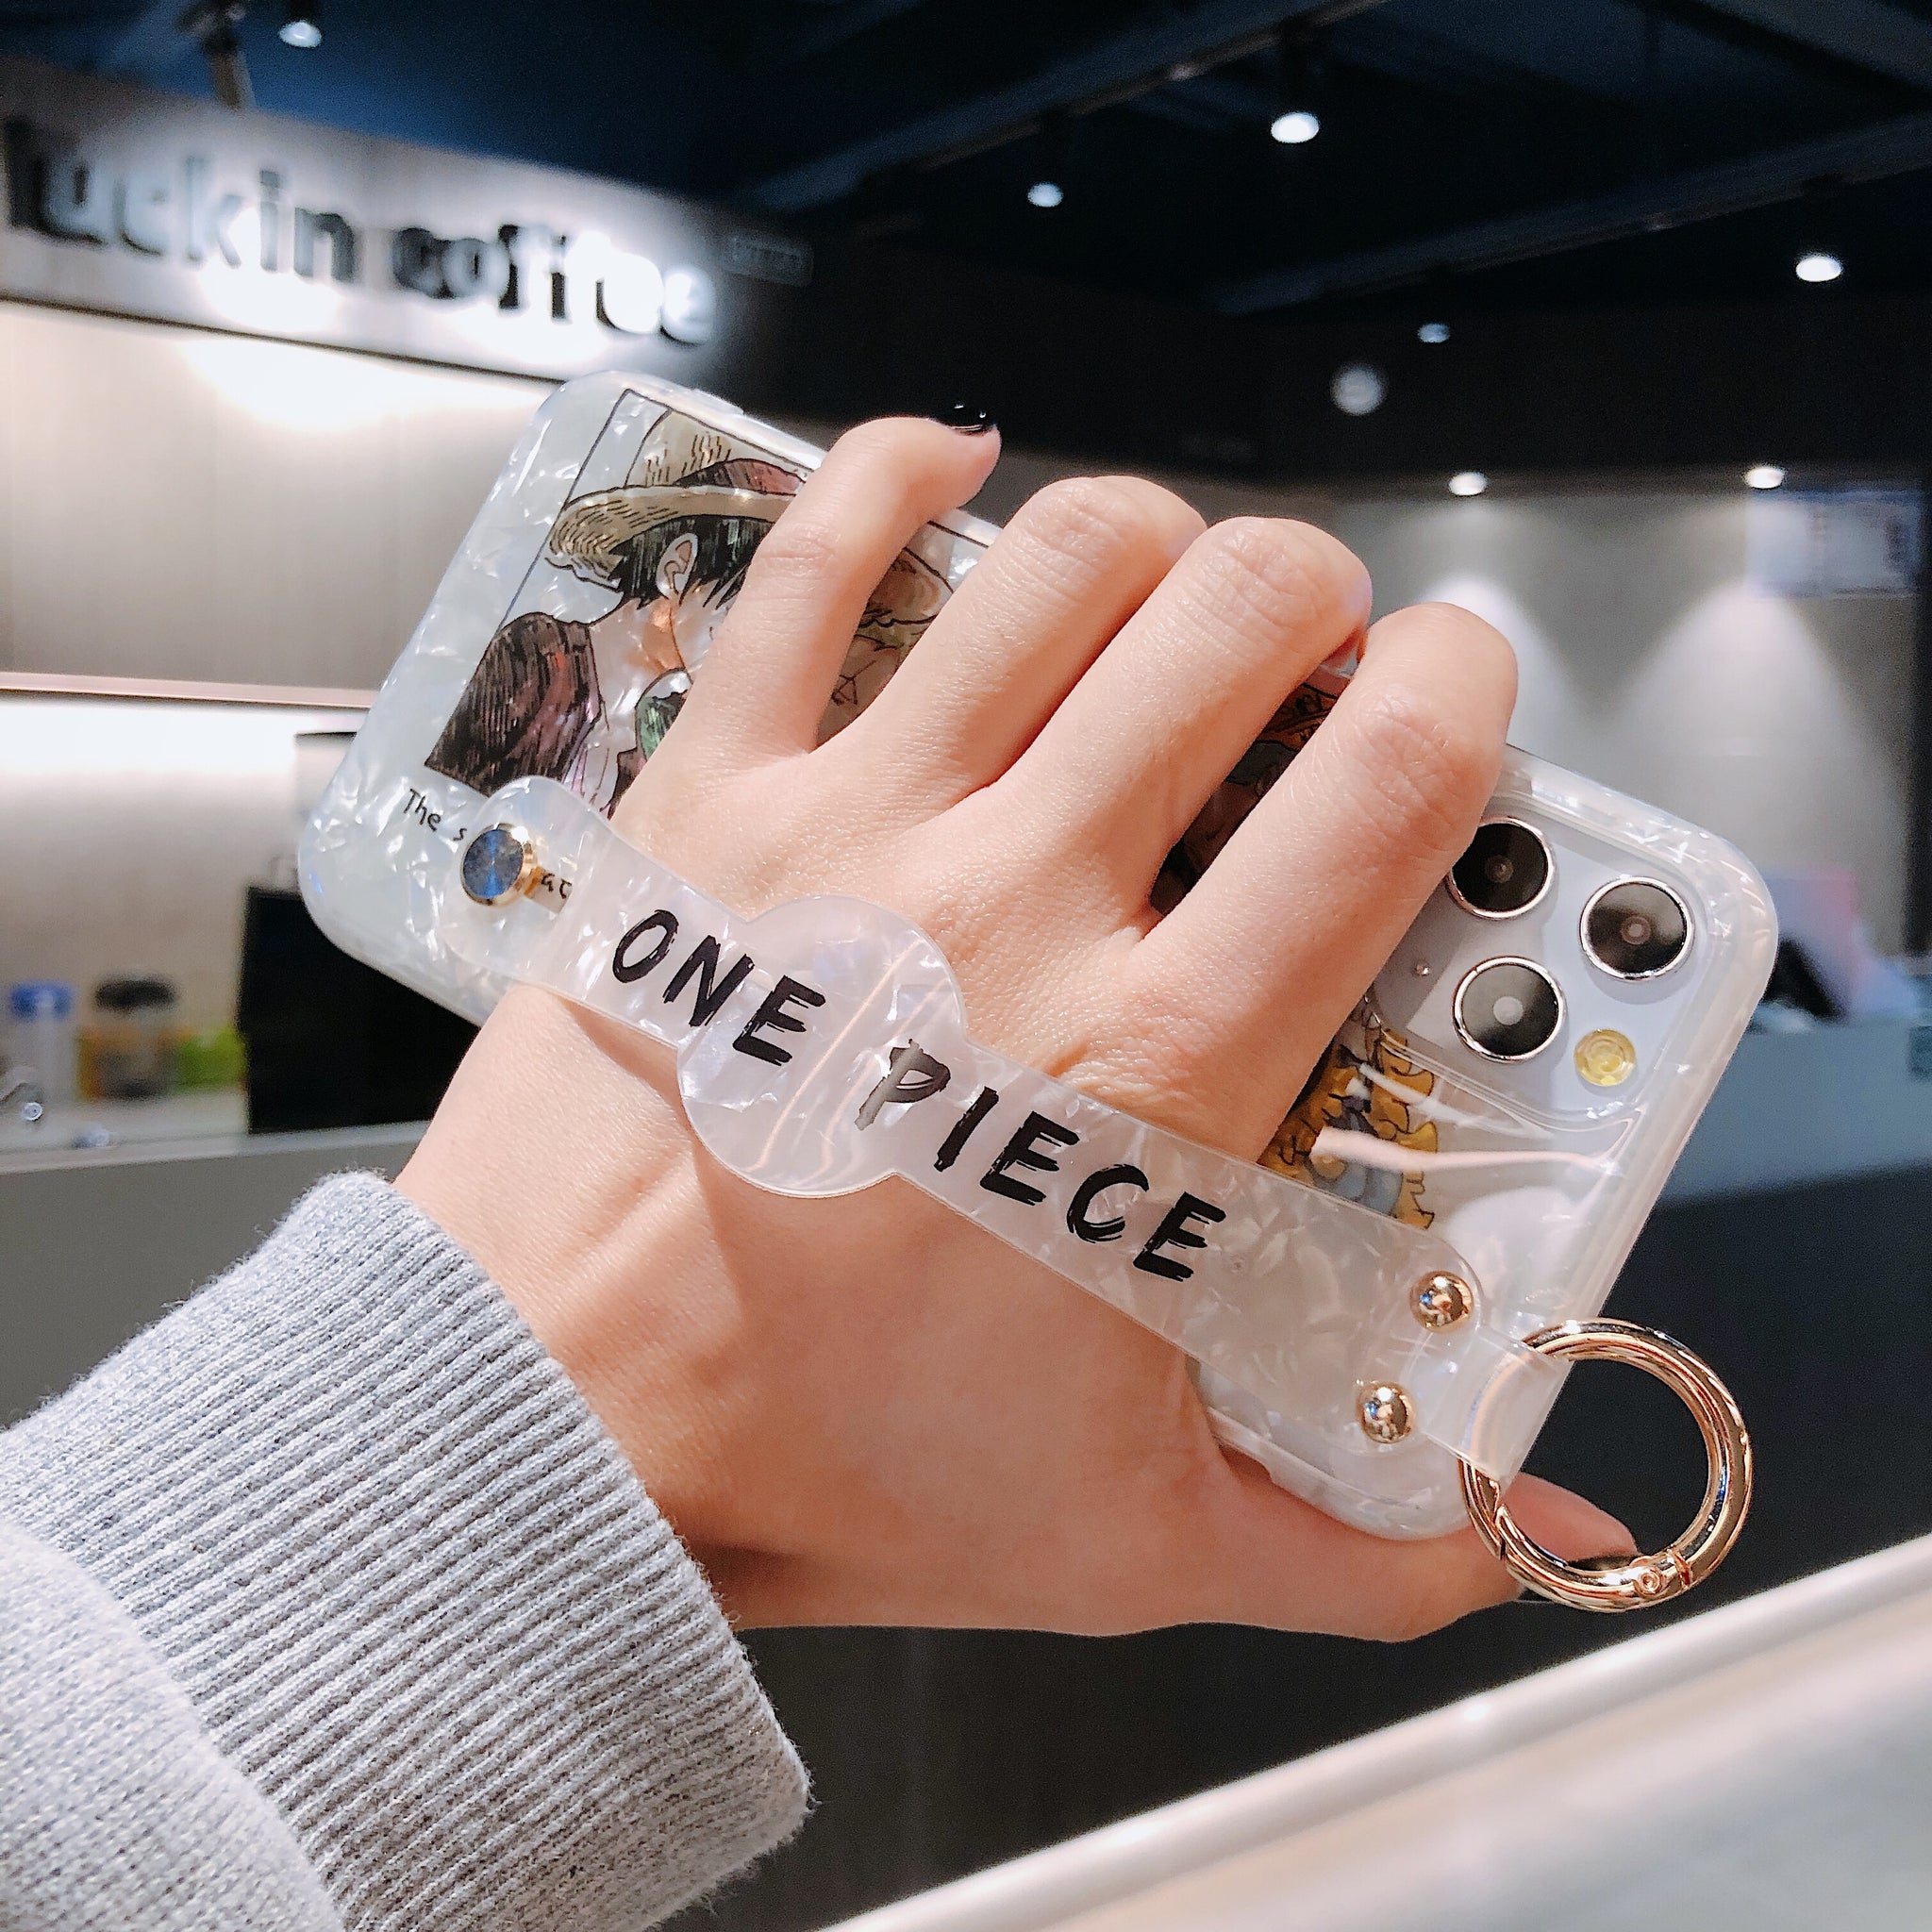 One Piece Wrist Strap Phone Case